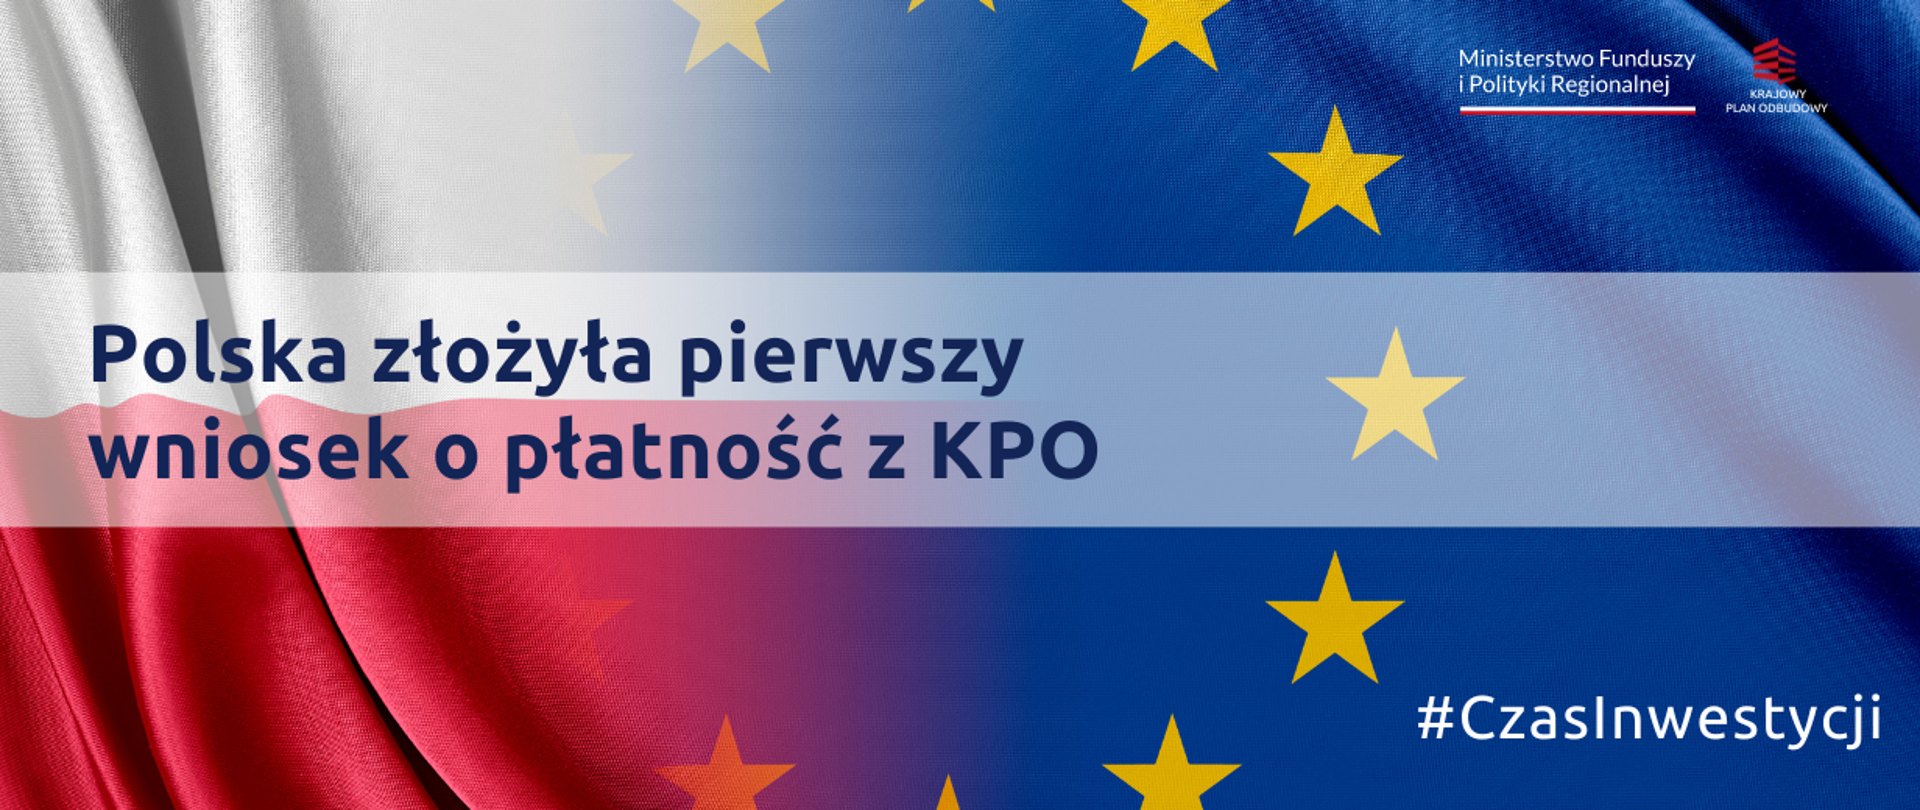 Polska złożyła pierwszy wniosek o płatność z KPO, na grafice flagi Polski i UE 